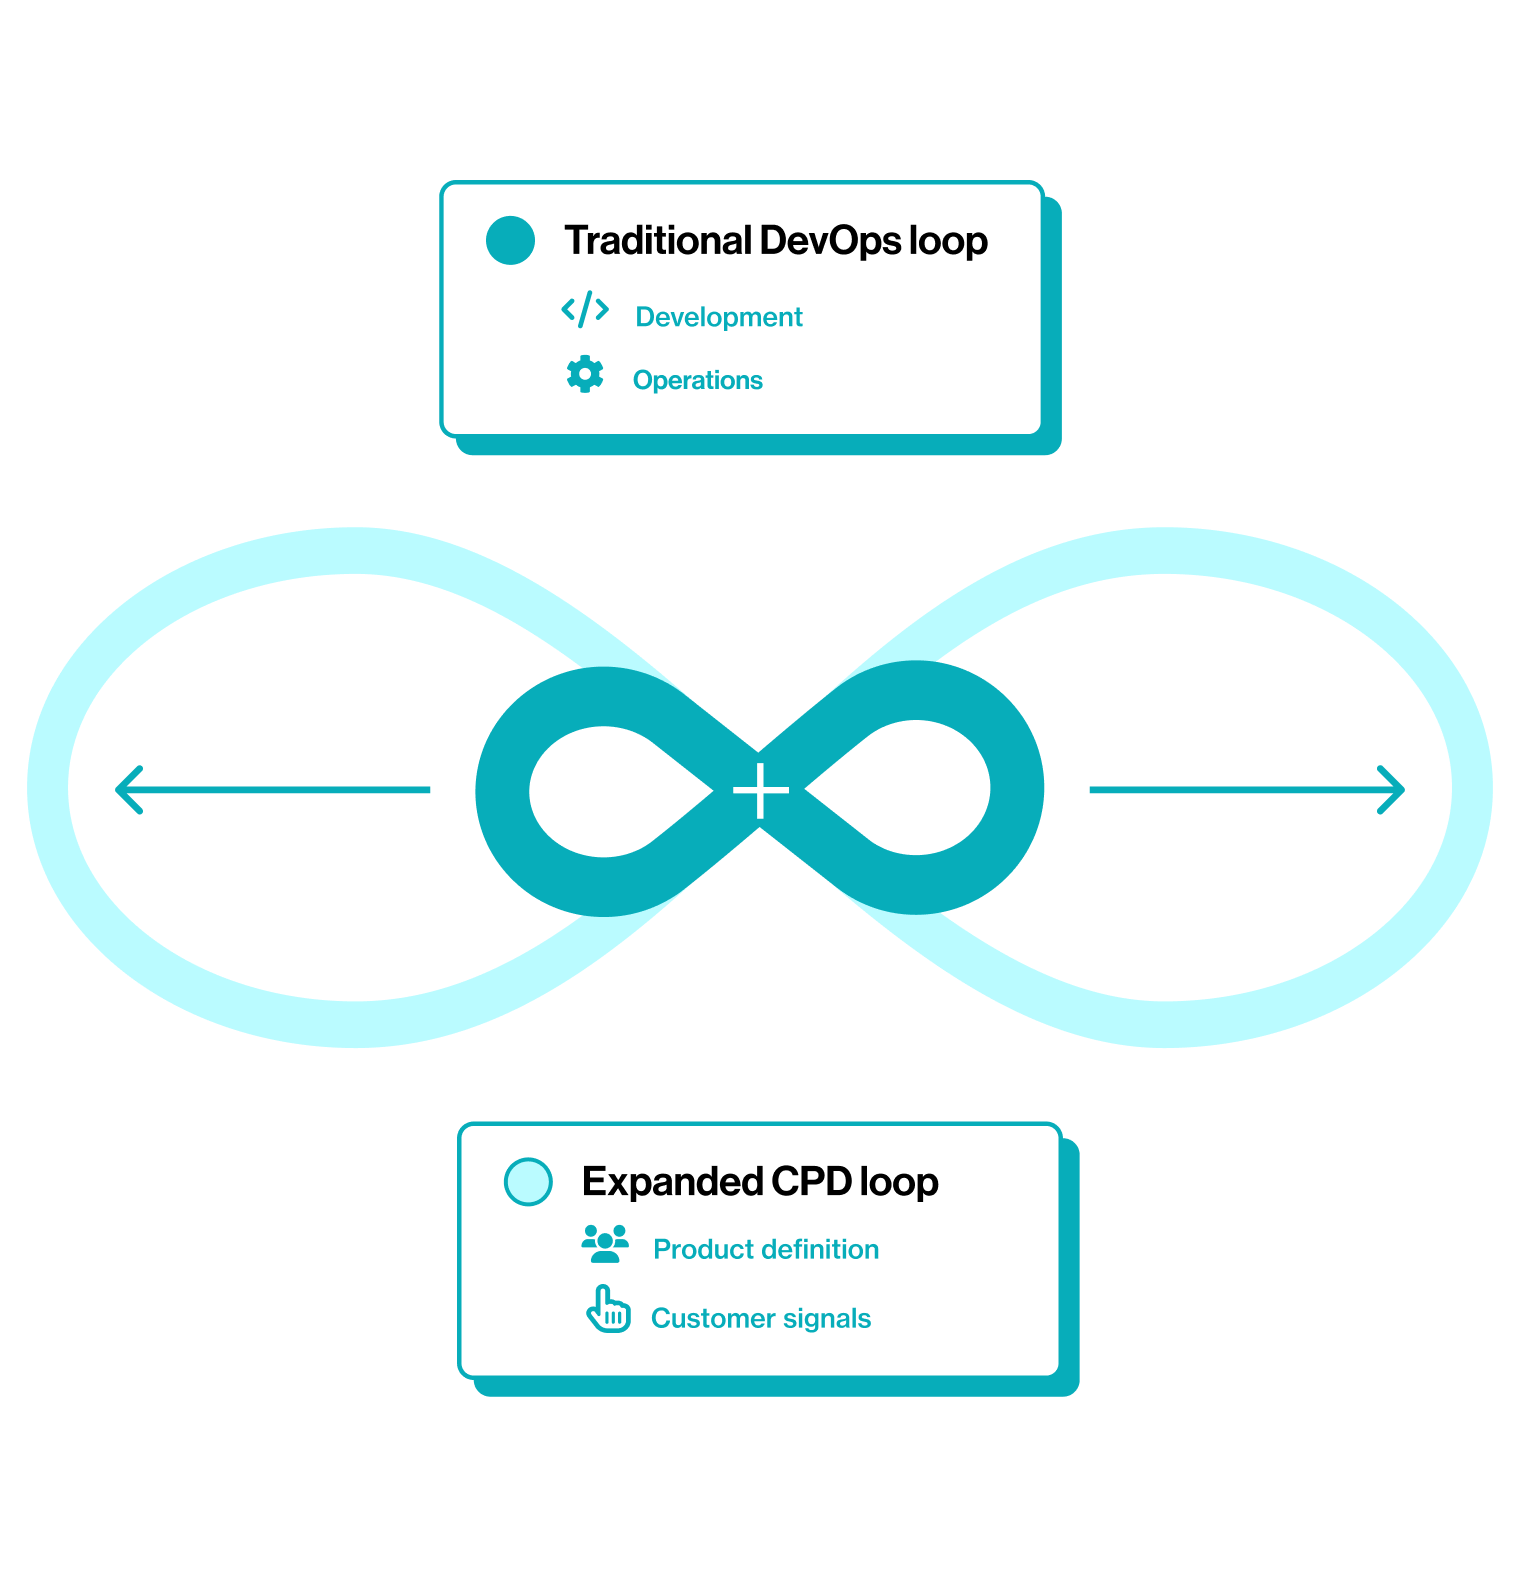 Traditional DevOps loop vs. Expanded CPD loop.